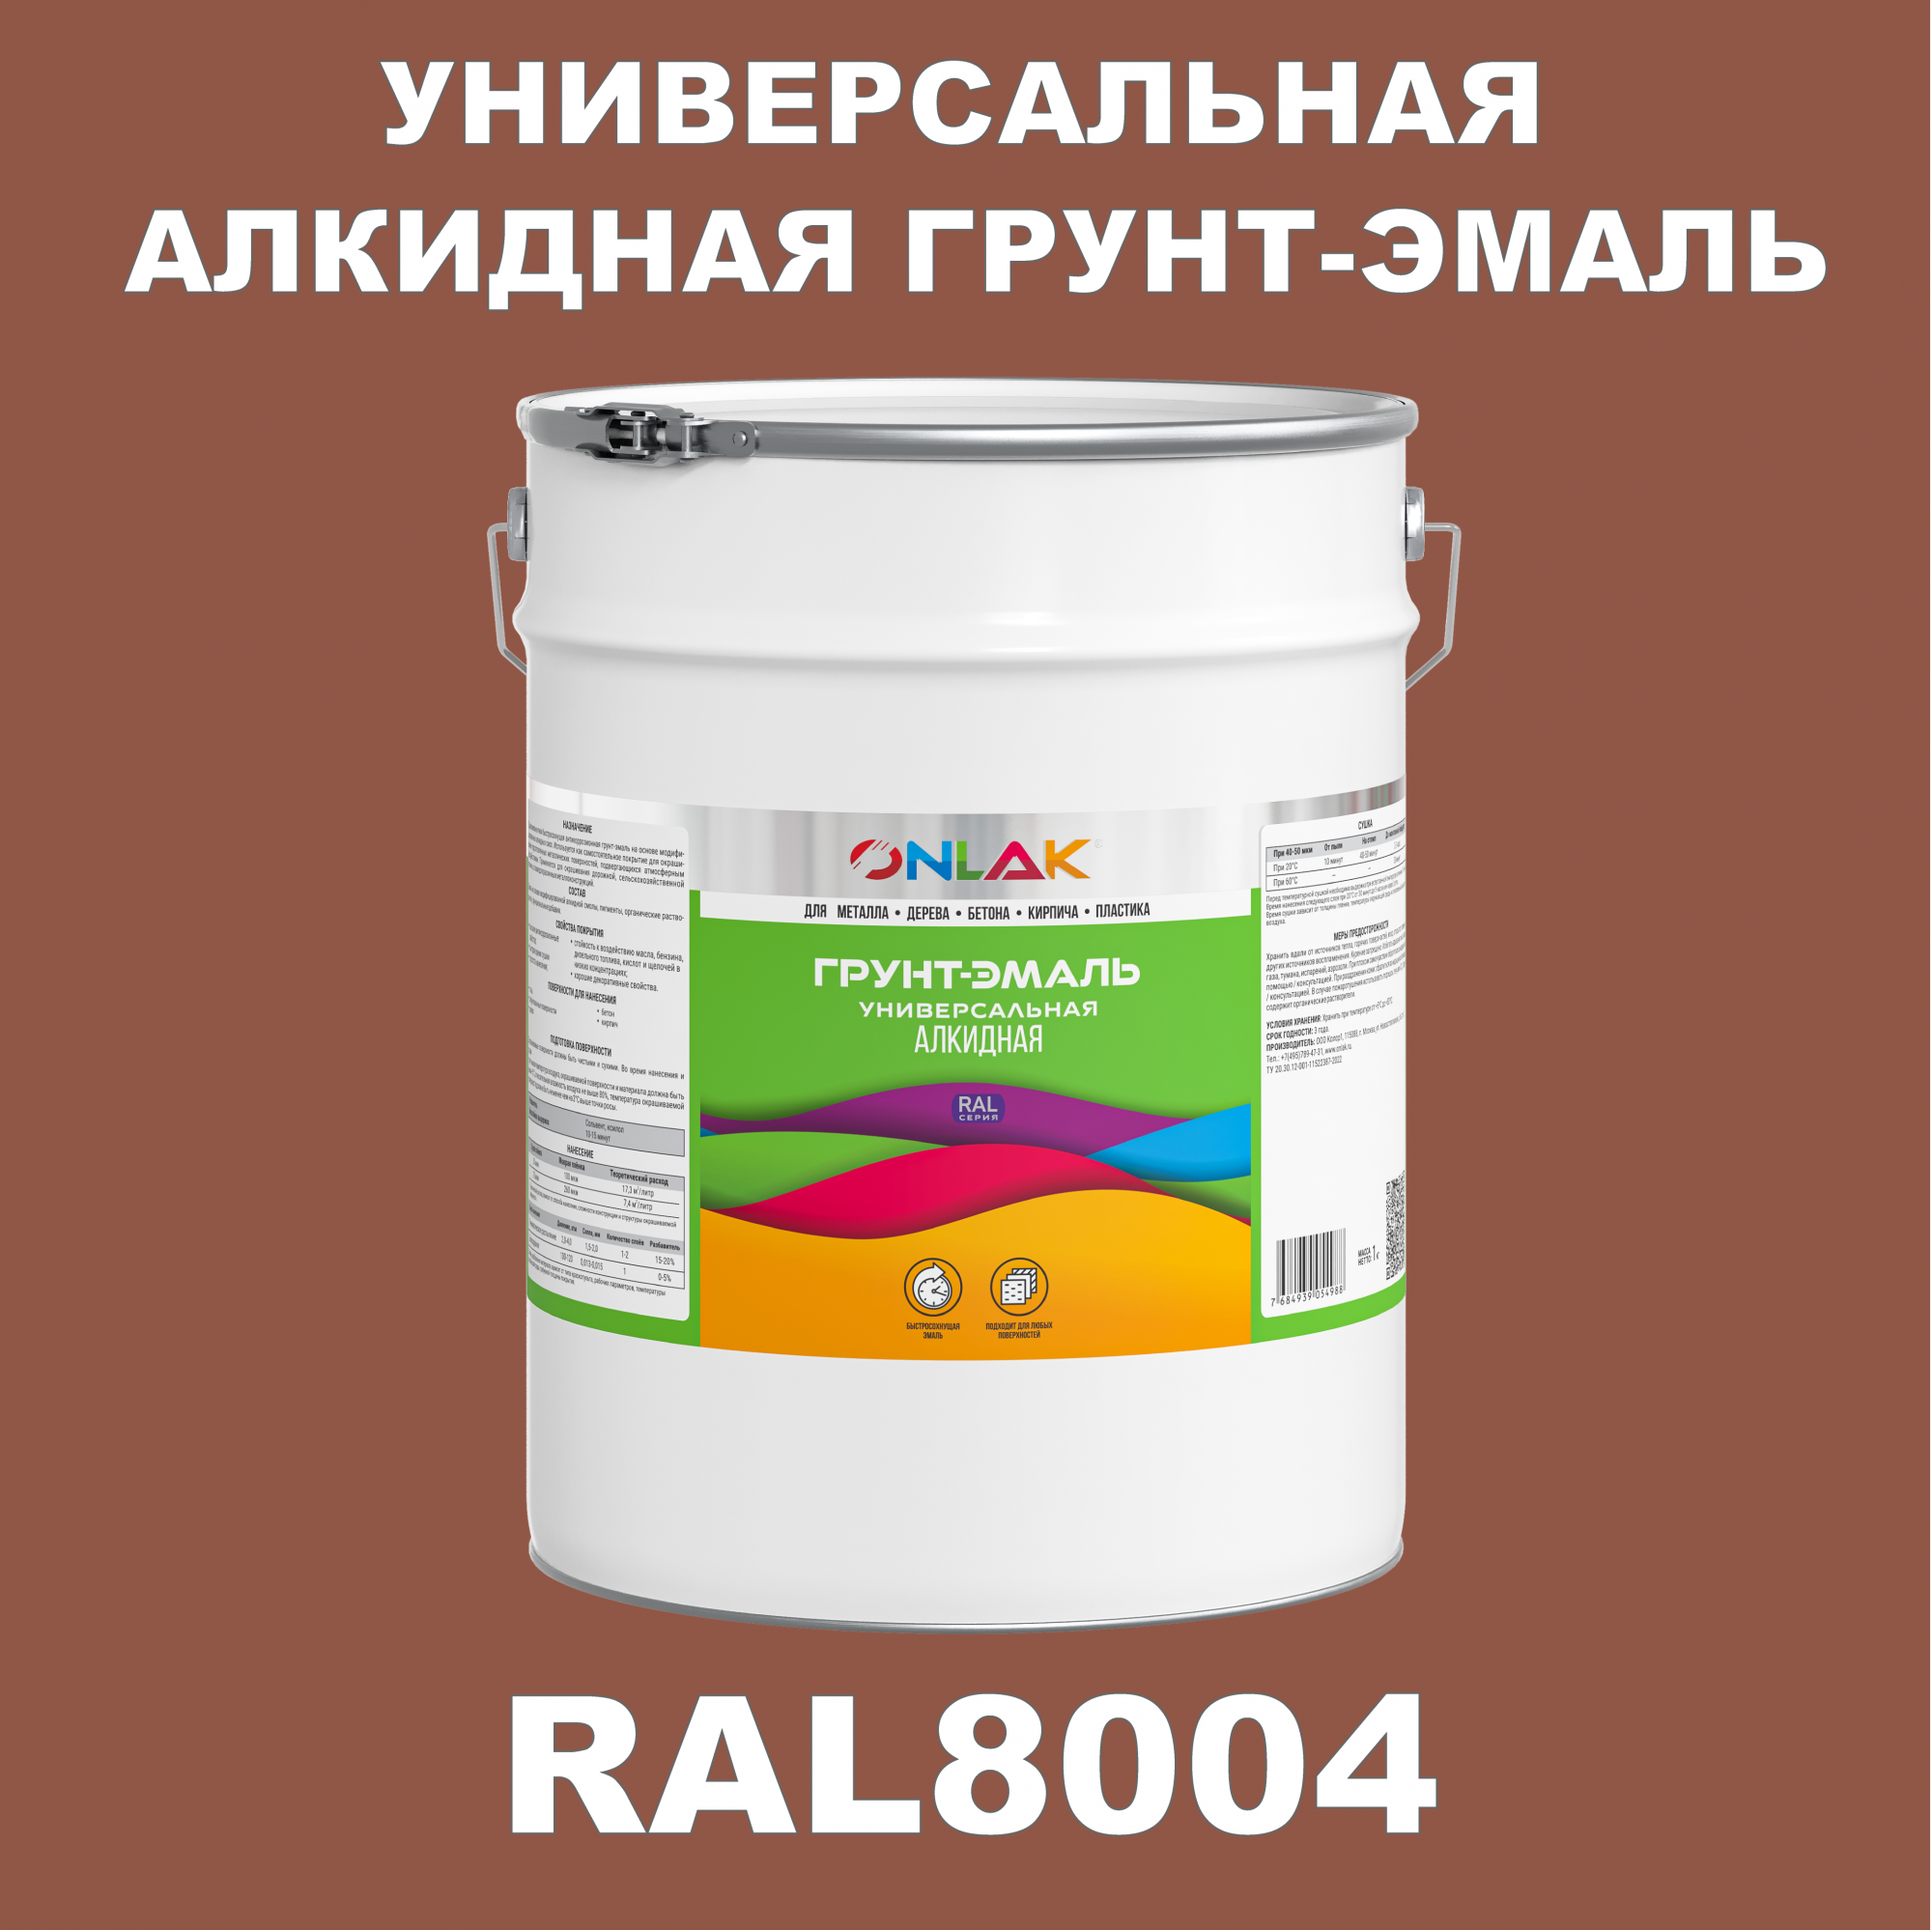 Грунт-эмаль ONLAK 1К RAL8004 антикоррозионная алкидная по металлу по ржавчине 20 кг грунт эмаль yollo по ржавчине алкидная зеленая 0 9 кг